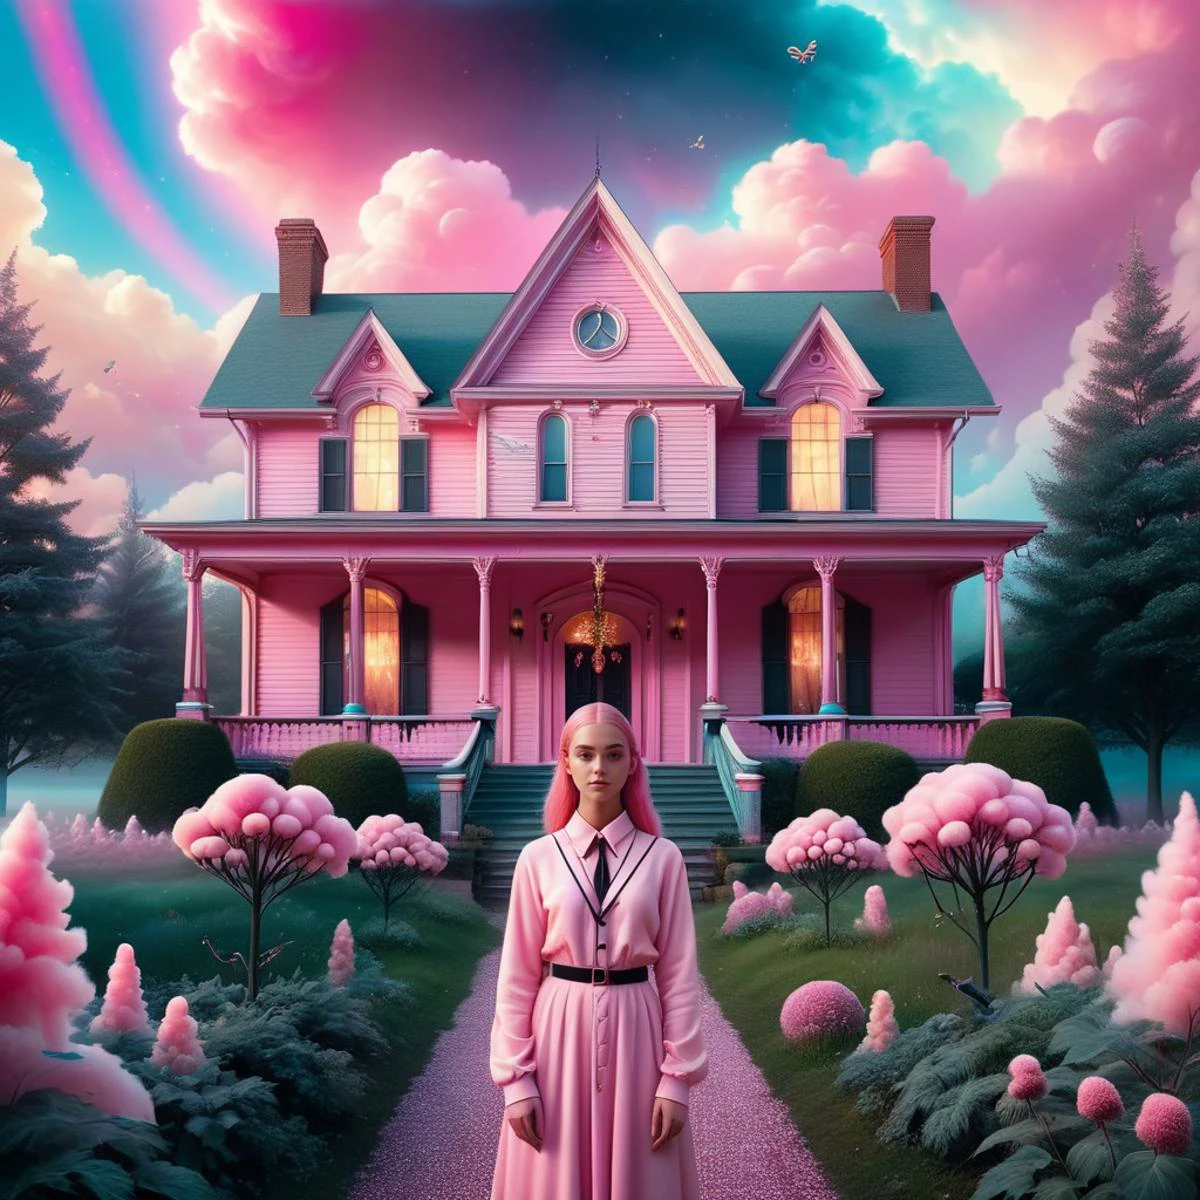 две женщины стоят перед старым домом с привидениями, в стиле светло-розового, портретная съемка в социальных сетях, Замысловатые костюмы, демоническая фотография, Барбикор, эстетика снимка, Темный pink and light pink  against a rainbows, фон представляет собой дизайн тай-дай, переплетение, a Горящий realistic pink and blue sun, Реалистичное пламя, Горящий, киборг, черно-белые фрактальные спирали, Мельчайшие детали, растения, щупальца осьминога, сотовый узор, сакральная геометрия на коже, цветок жизни, психоделический, Визионерское искусство, чрезвычайно подробный, гиперреалистичный, свежий, 8K с апскейлингом до максимума, Темный, Ужастик, подсолнухи, шедевр, в горошек, кинематографический фон. Он немного пушистый, мультяшный стиль с элементами минимализма. сахарная вата